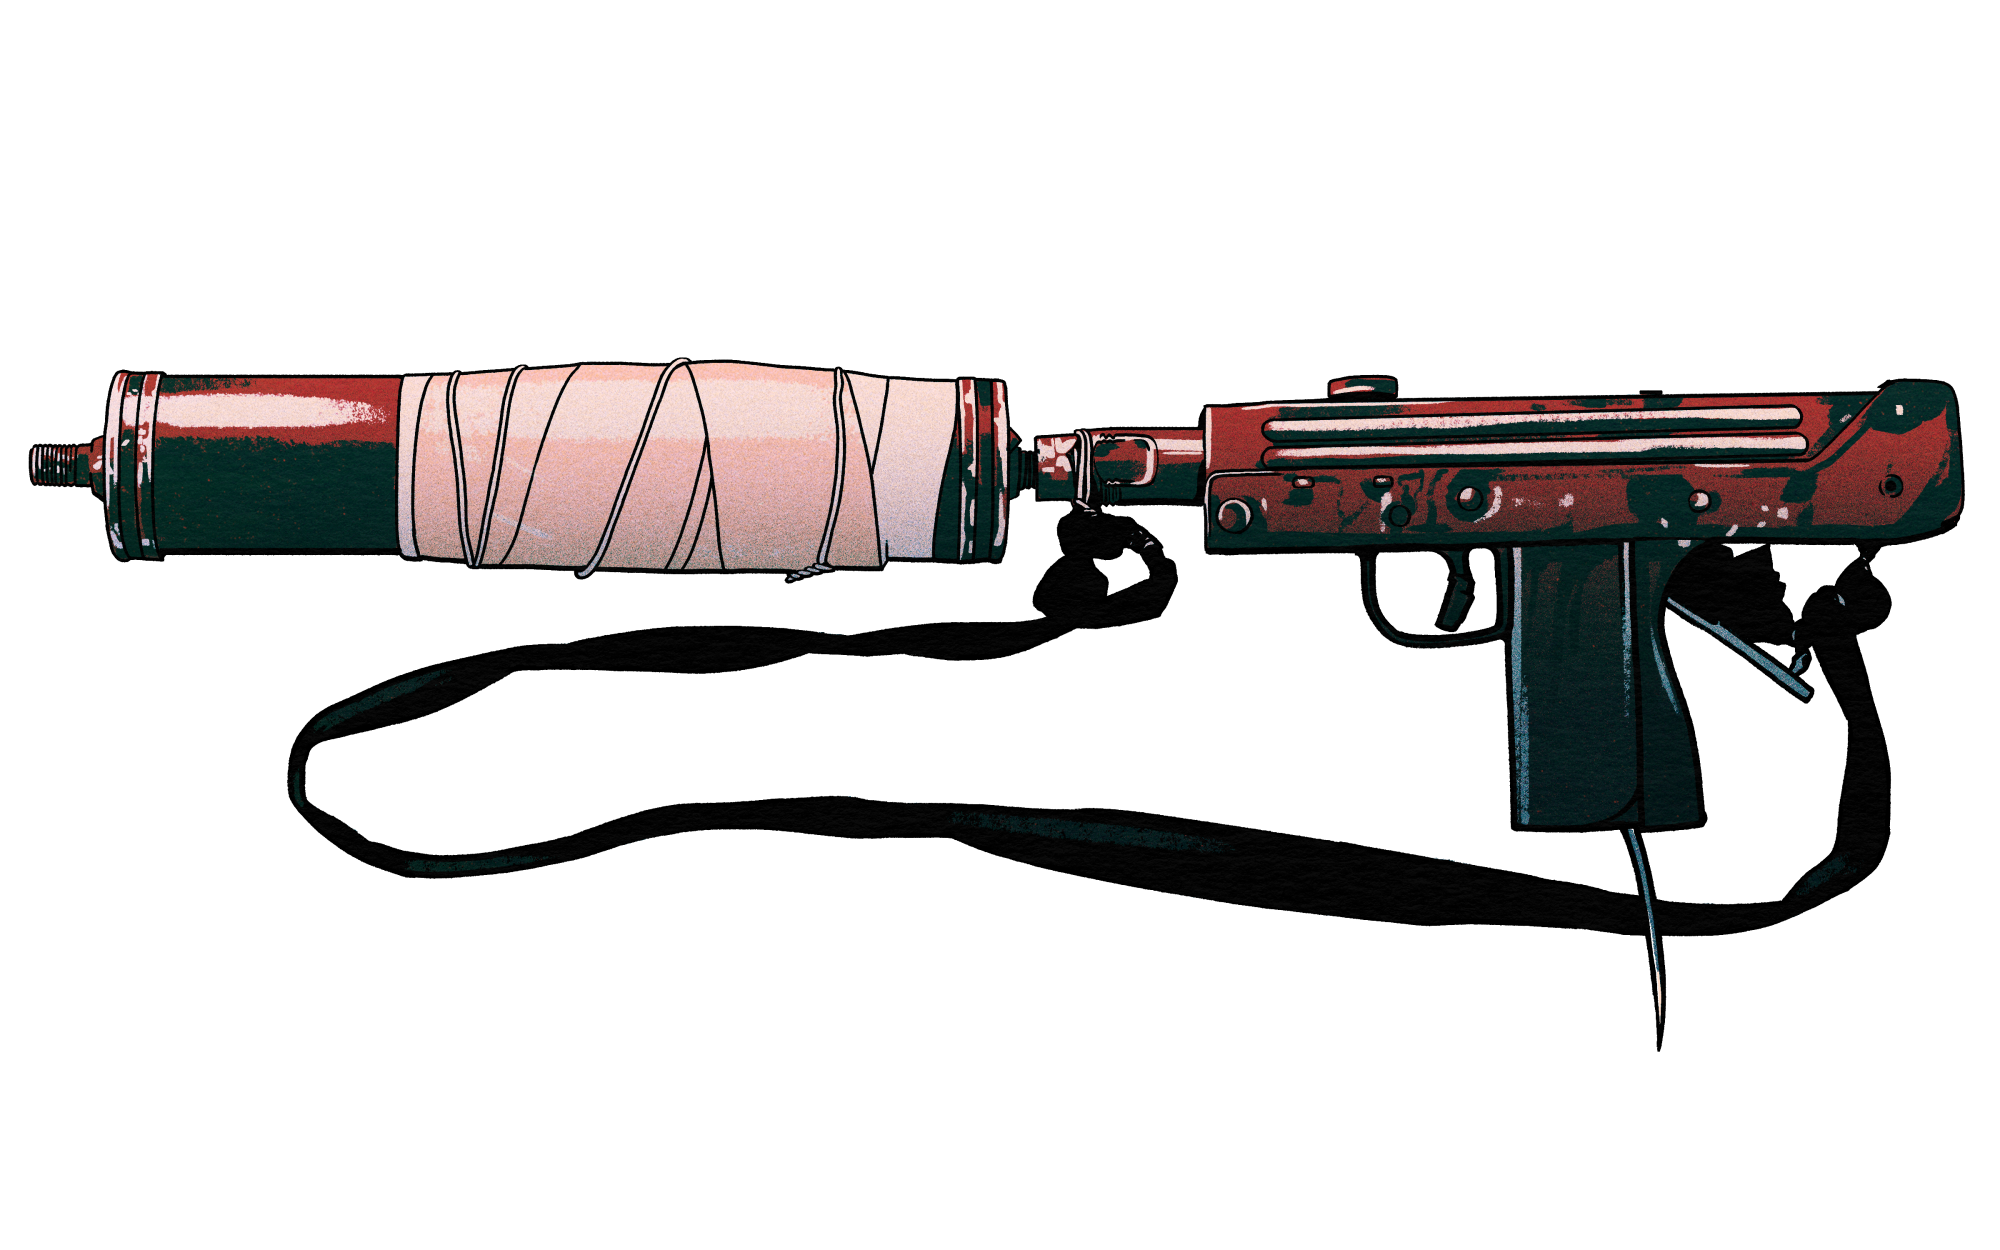 An illustration of a gun.